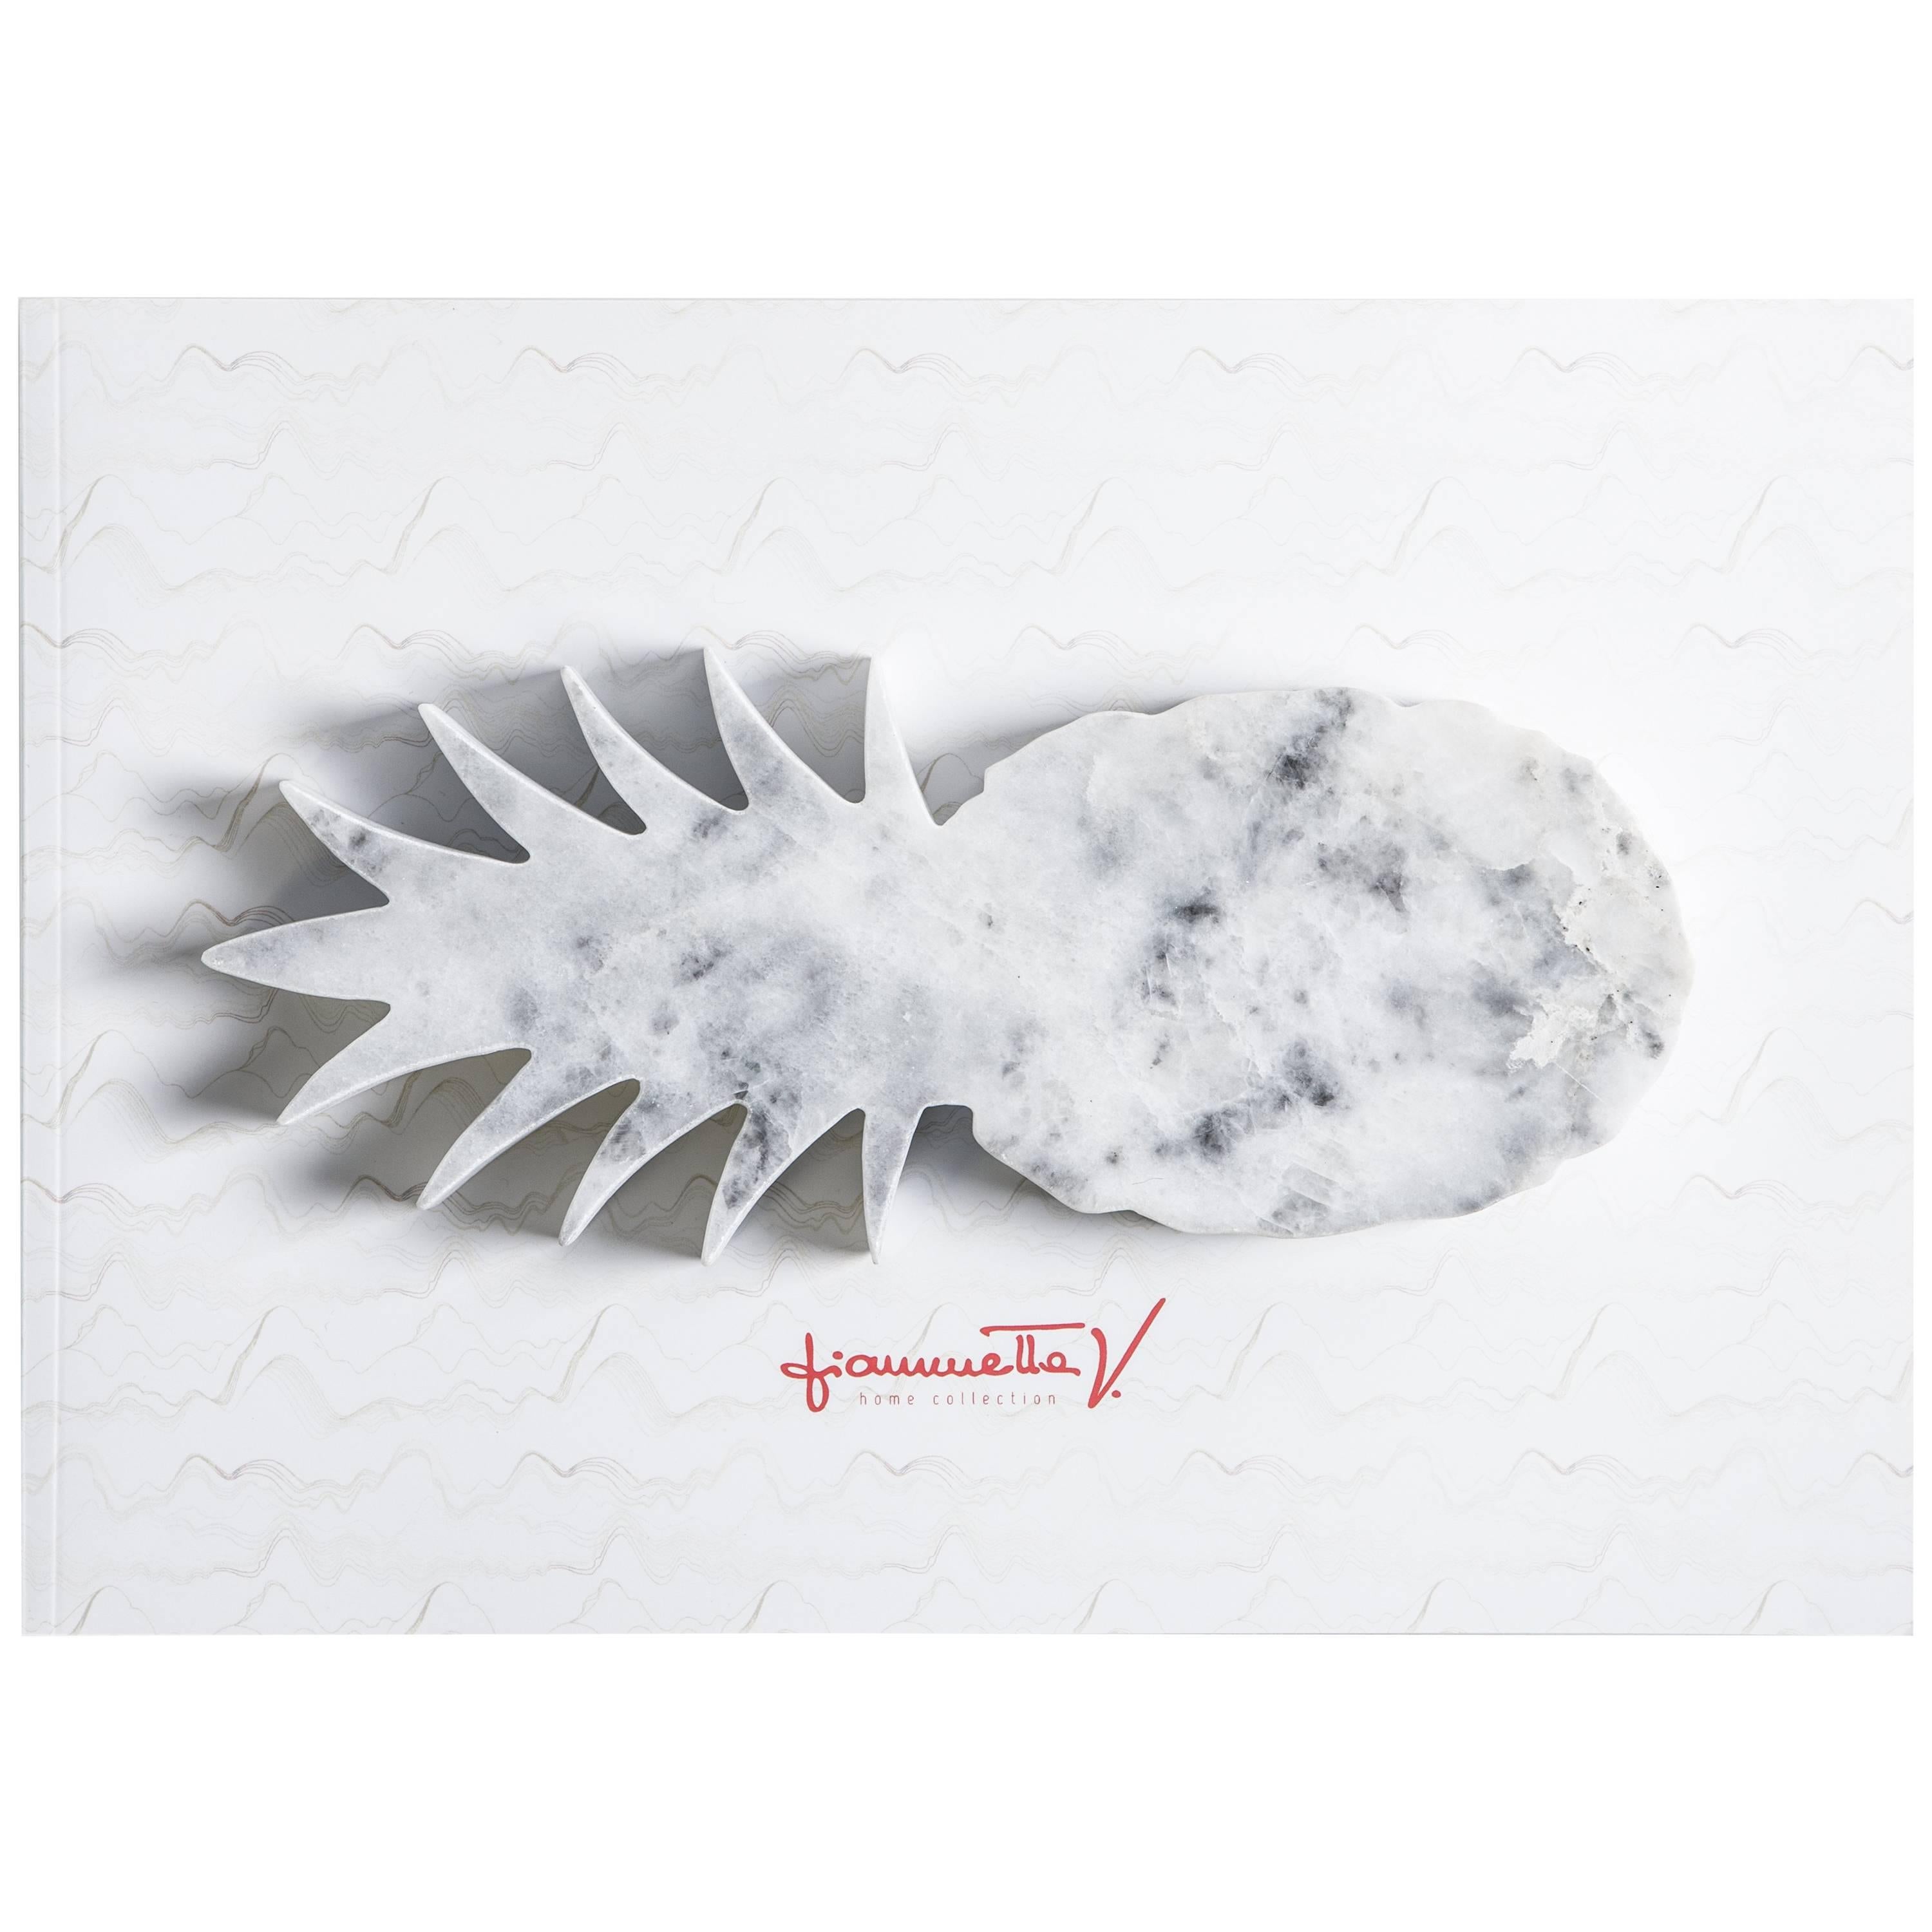 Handgefertigter Briefbeschwerer aus weißem Carrara-Marmor mit Ananasform, handgefertigt